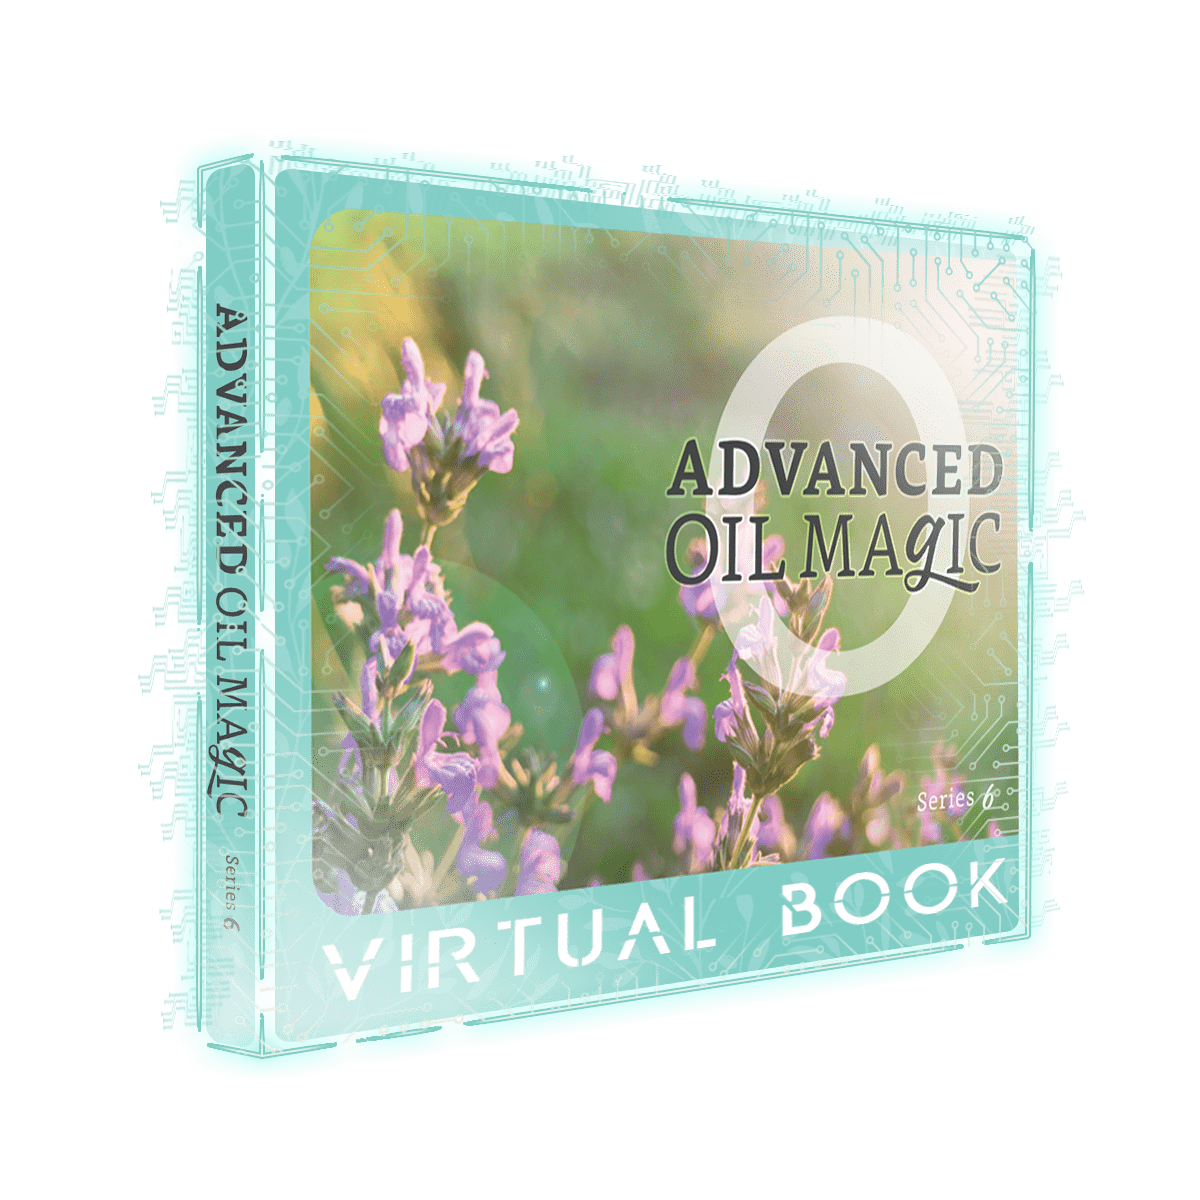 ADVANCED Oil Magic Series 6 [Virtual Book]